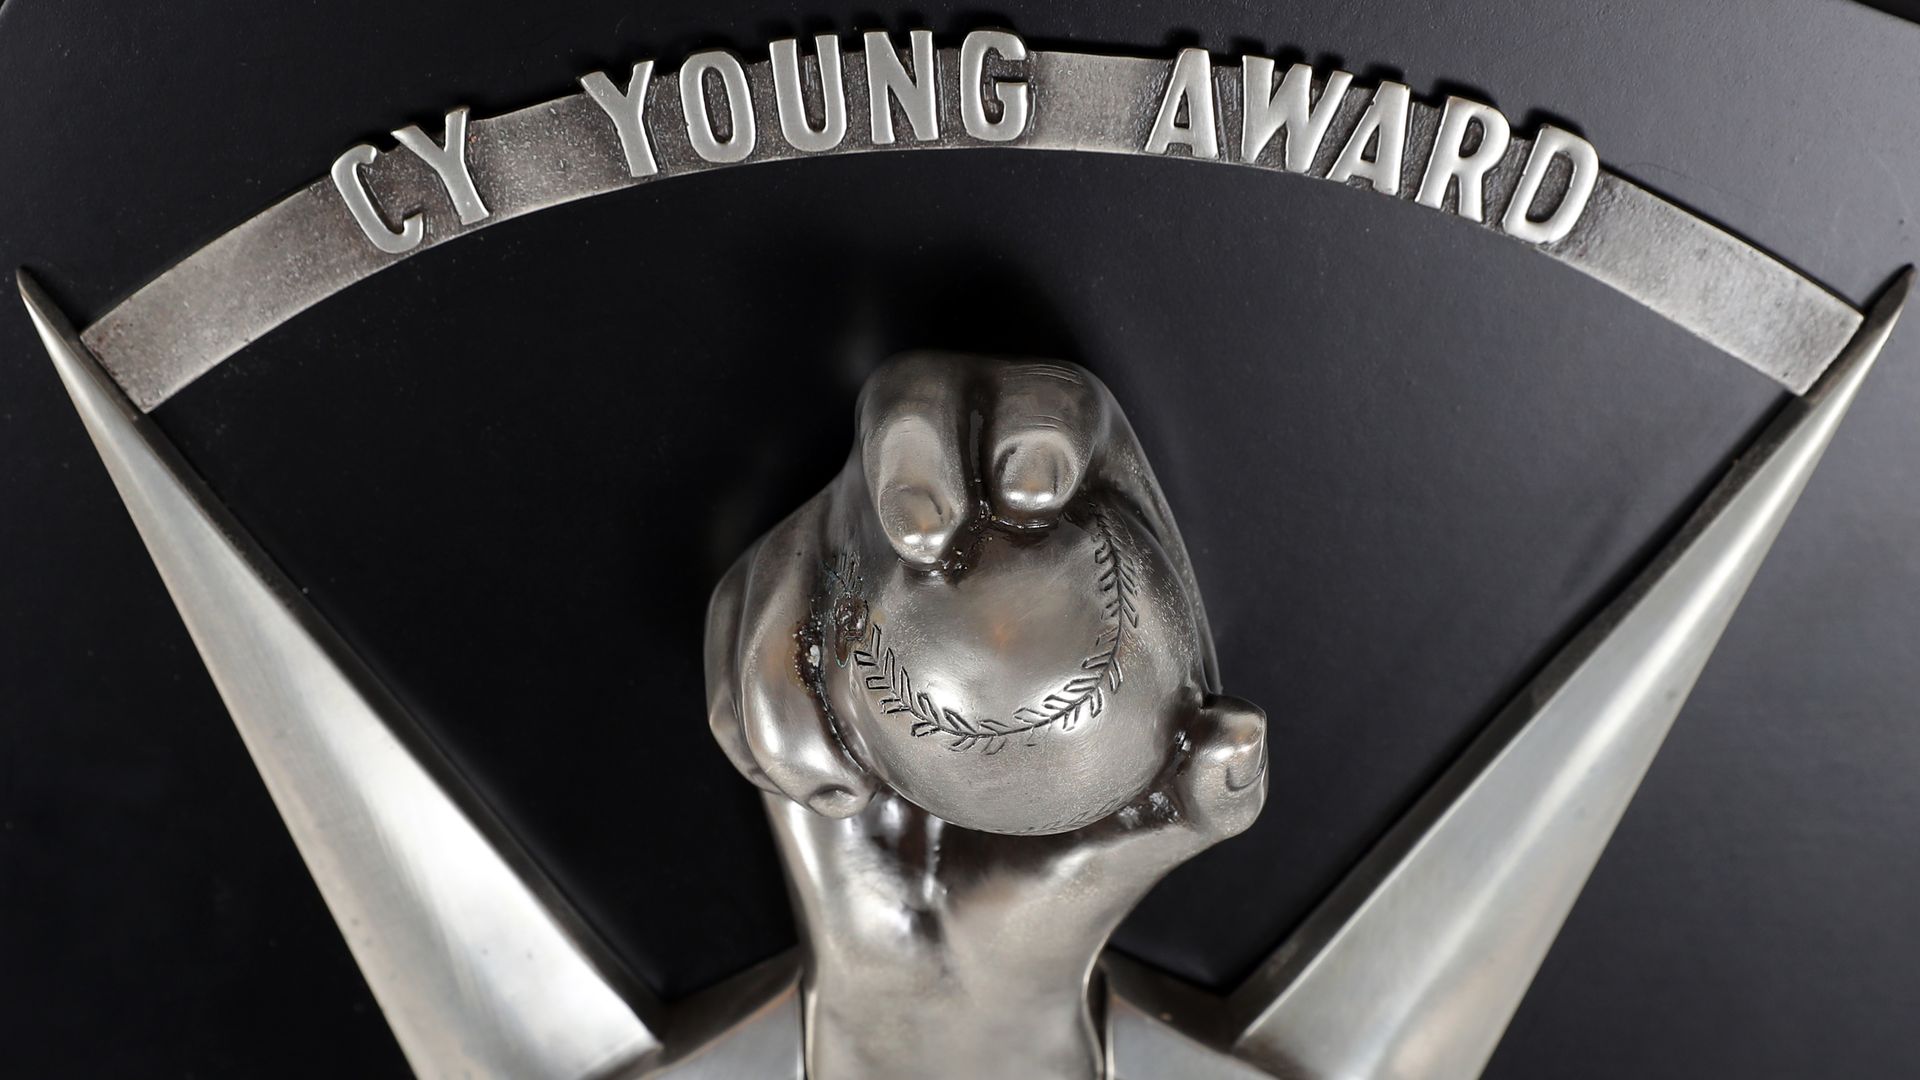 Cy Young Award